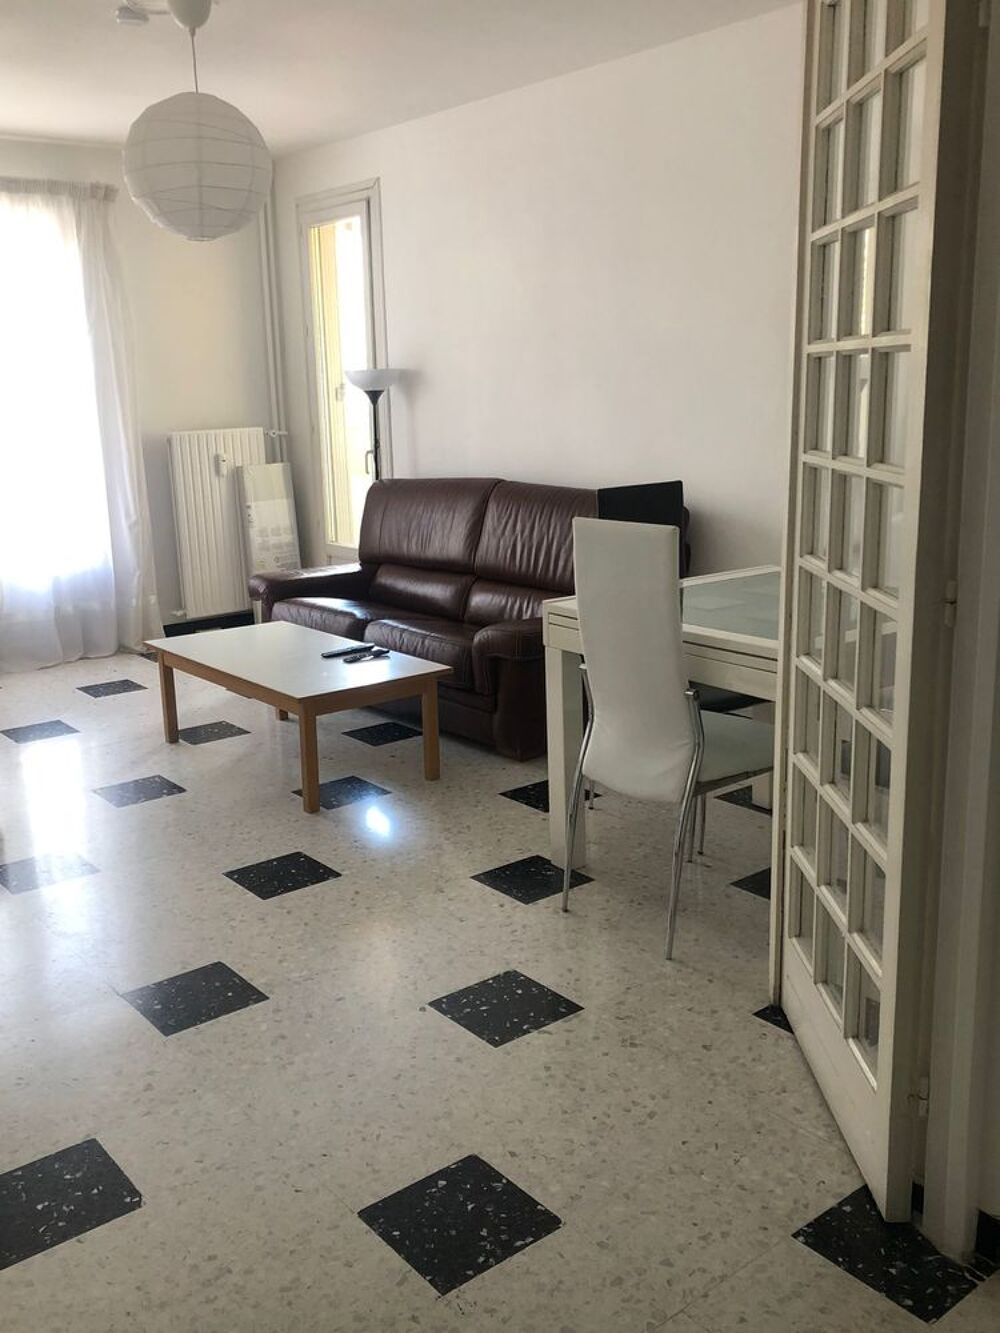 Location Colocation Chambre meuble dans colocation Toulon